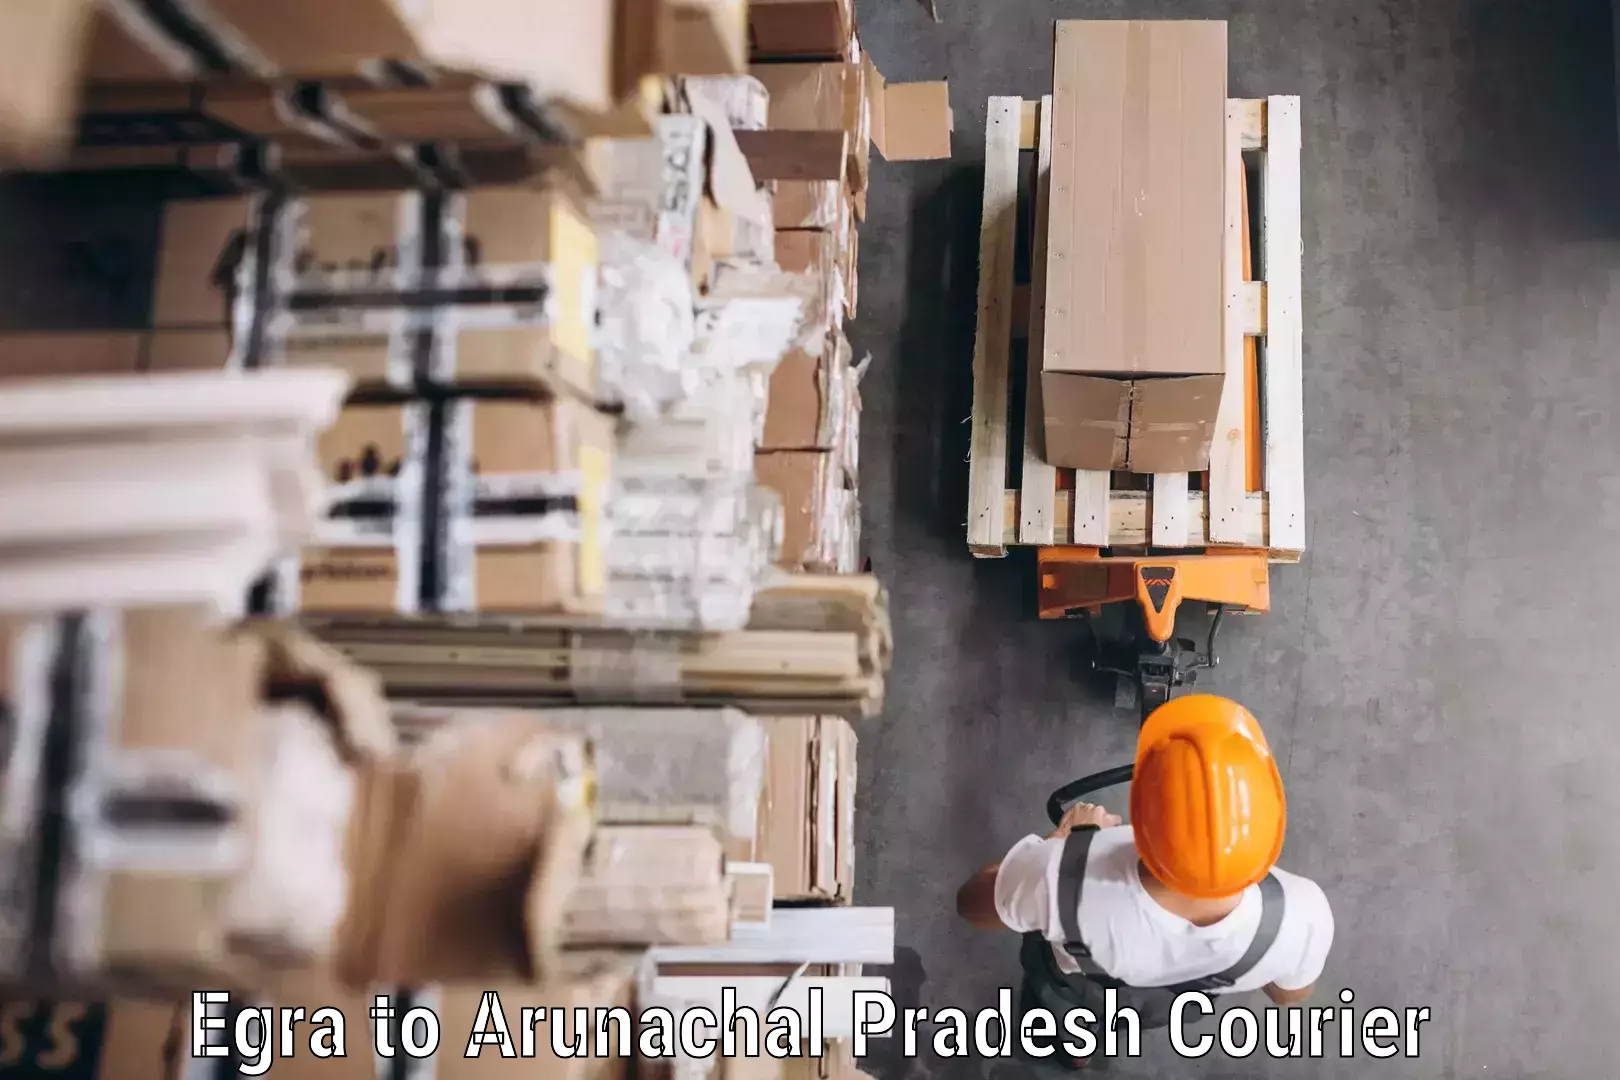 Courier service efficiency Egra to Arunachal Pradesh